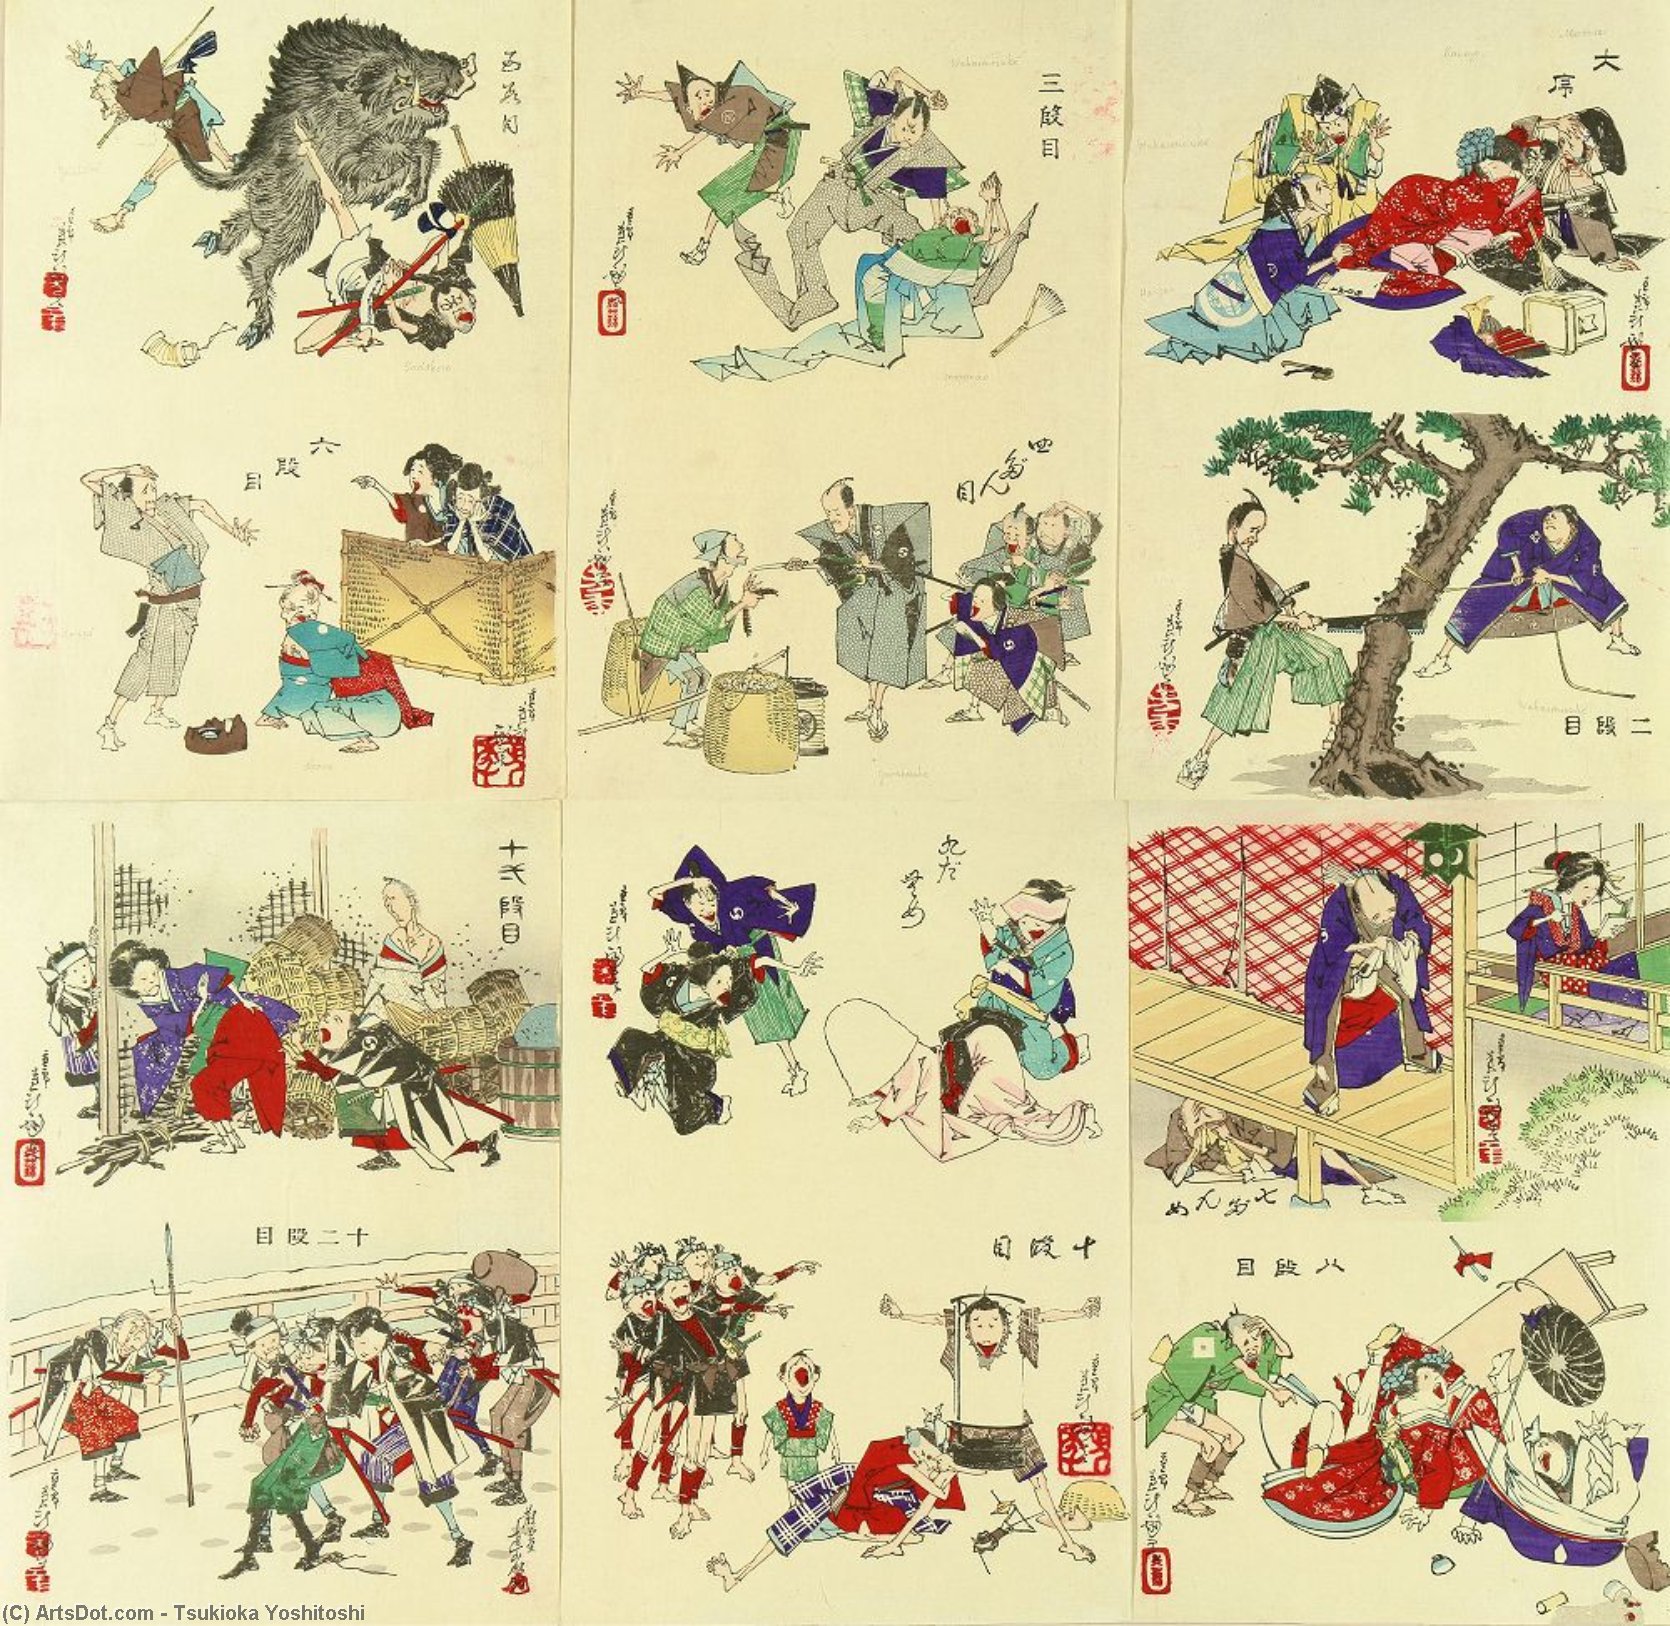 WikiOO.org - Encyclopedia of Fine Arts - Maleri, Artwork Tsukioka Yoshitoshi - Comic Picture